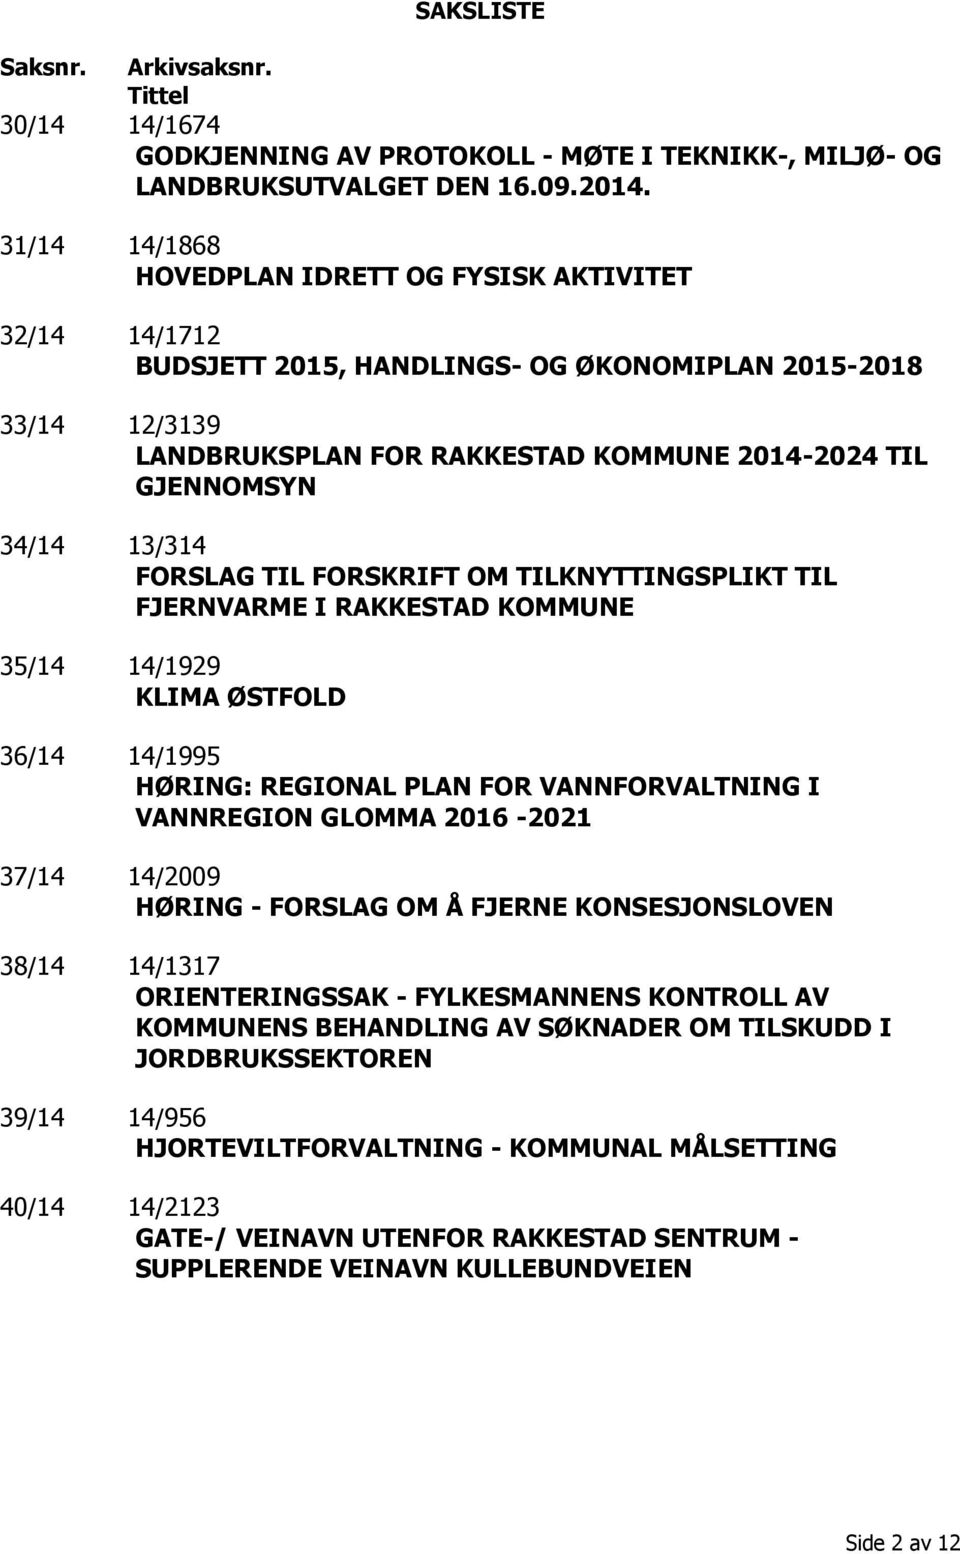 13/314 FORSLAG TIL FORSKRIFT OM TILKNYTTINGSPLIKT TIL FJERNVARME I RAKKESTAD KOMMUNE 35/14 14/1929 KLIMA ØSTFOLD 36/14 14/1995 HØRING: REGIONAL PLAN FOR VANNFORVALTNING I VANNREGION GLOMMA 2016-2021